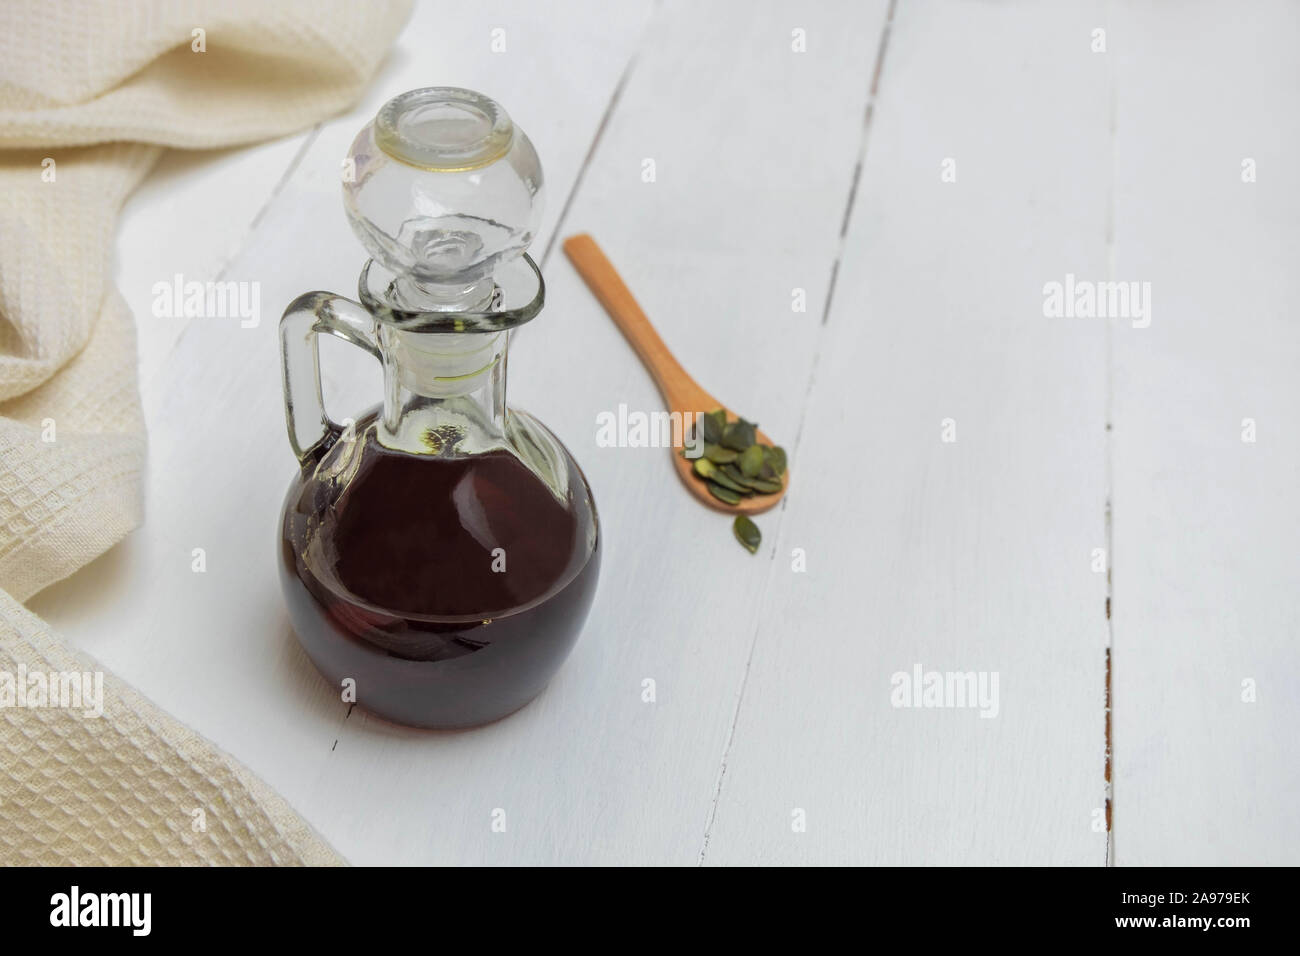 L'huile de graines de citrouille dans une bouteille en verre avec pupkin seeds Banque D'Images